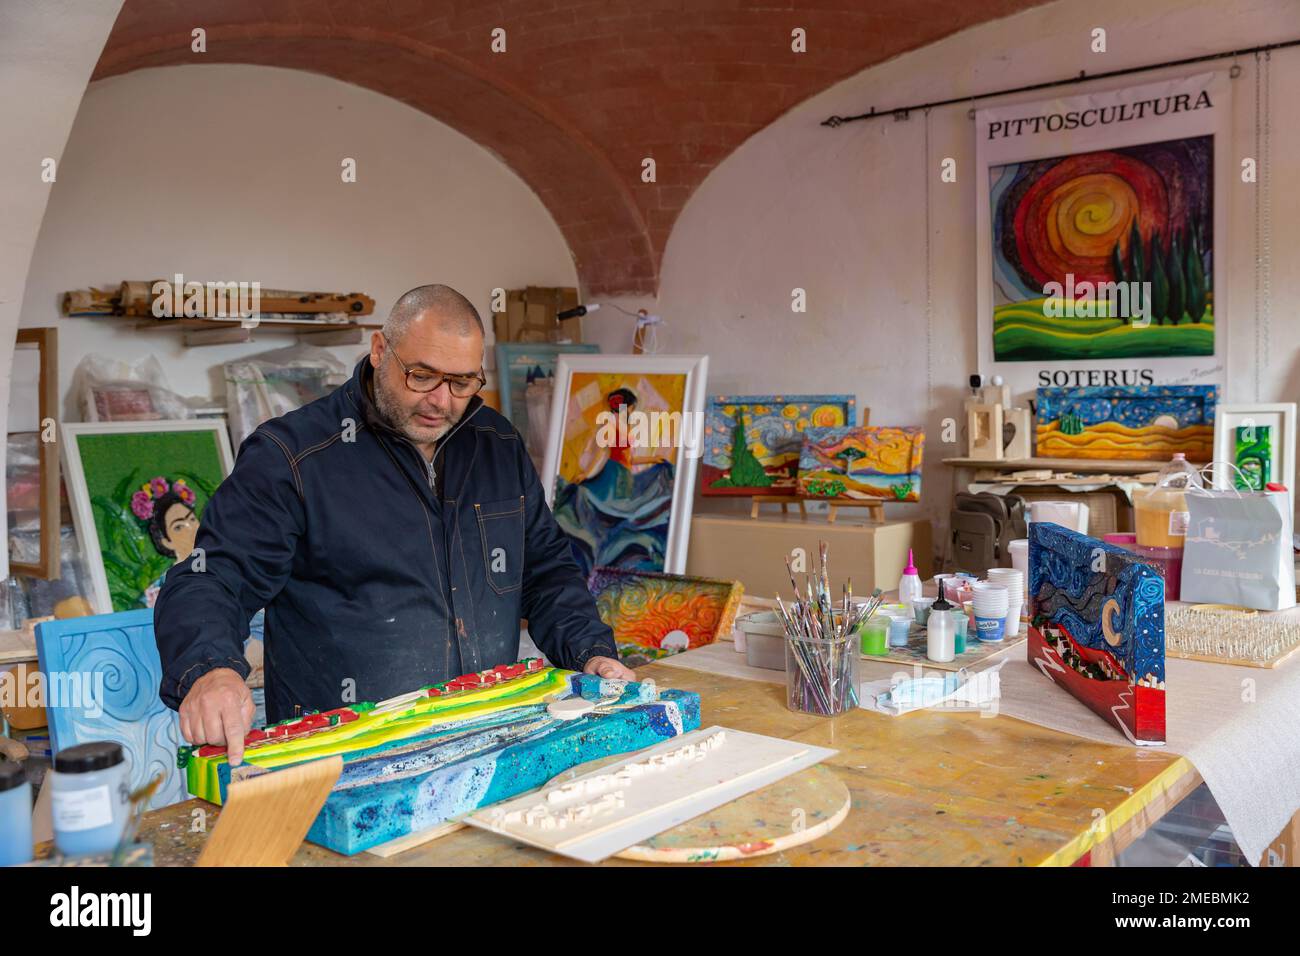 Der Handwerker/Künstler Salvatore Ferrante, „Soterus“, in seinem Atelier; bekannt für seine einzigartigen handgeschnitzten und handgemalten Holzbilder, Toskana, Italien. Stockfoto